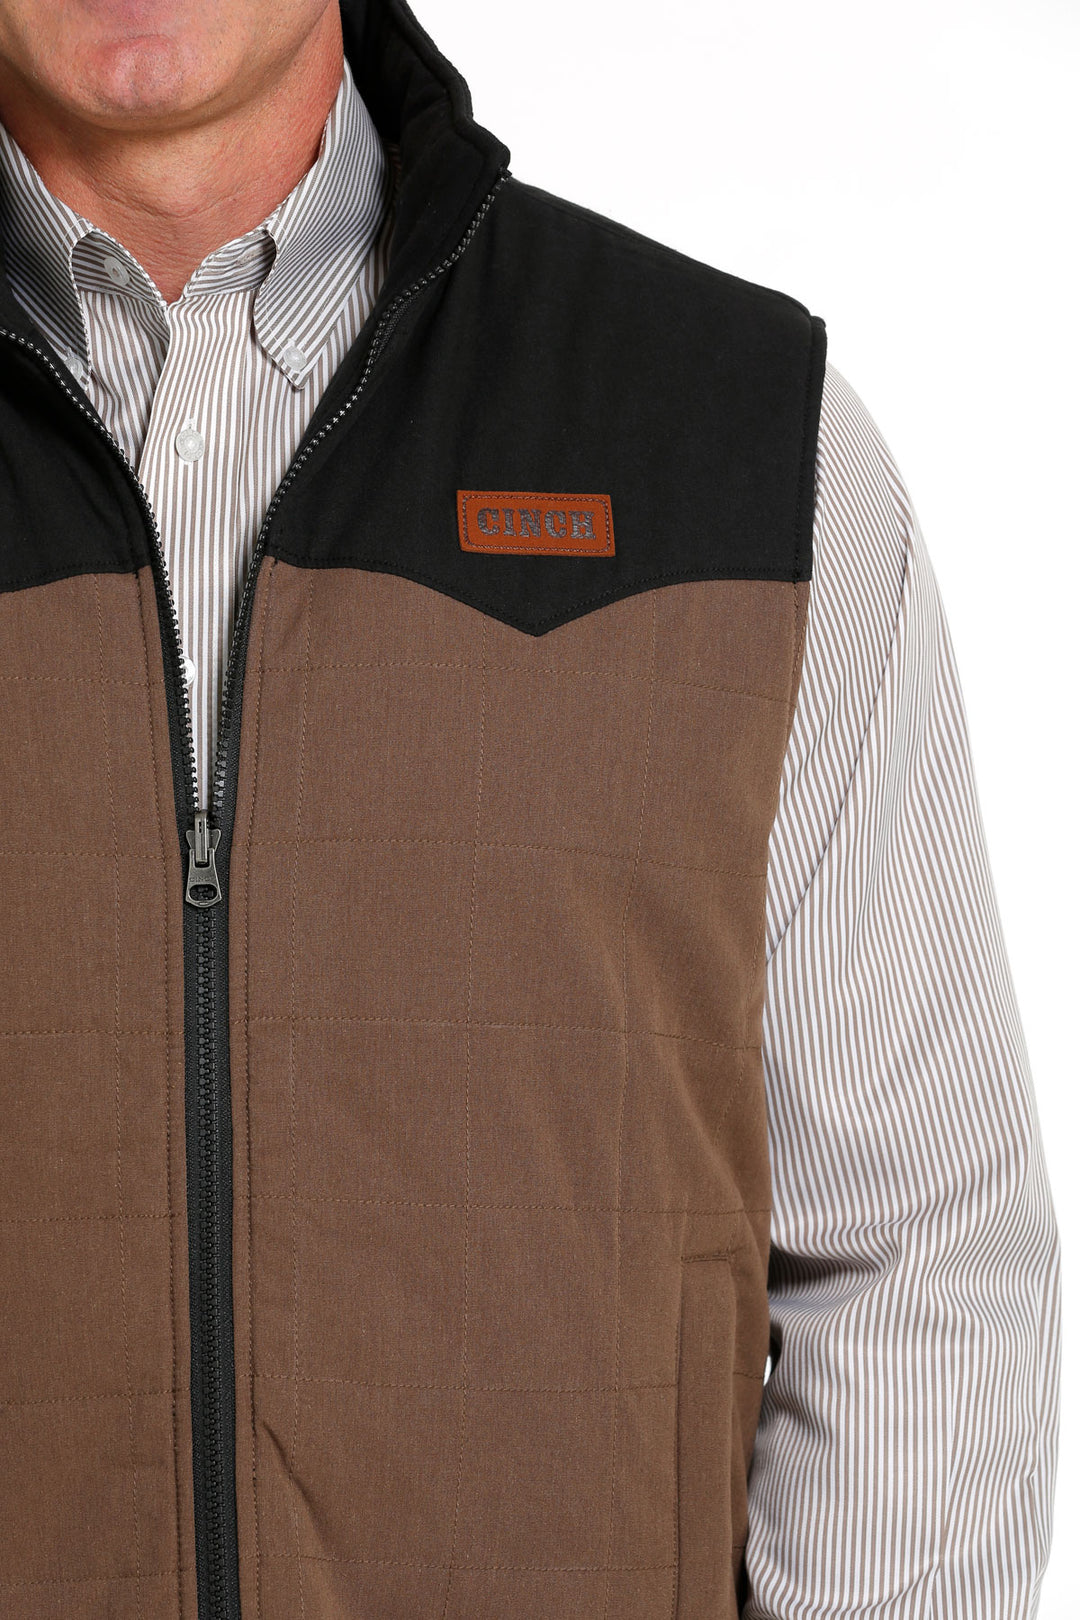 Cinch Men's Brown Quilted Reversible Vest